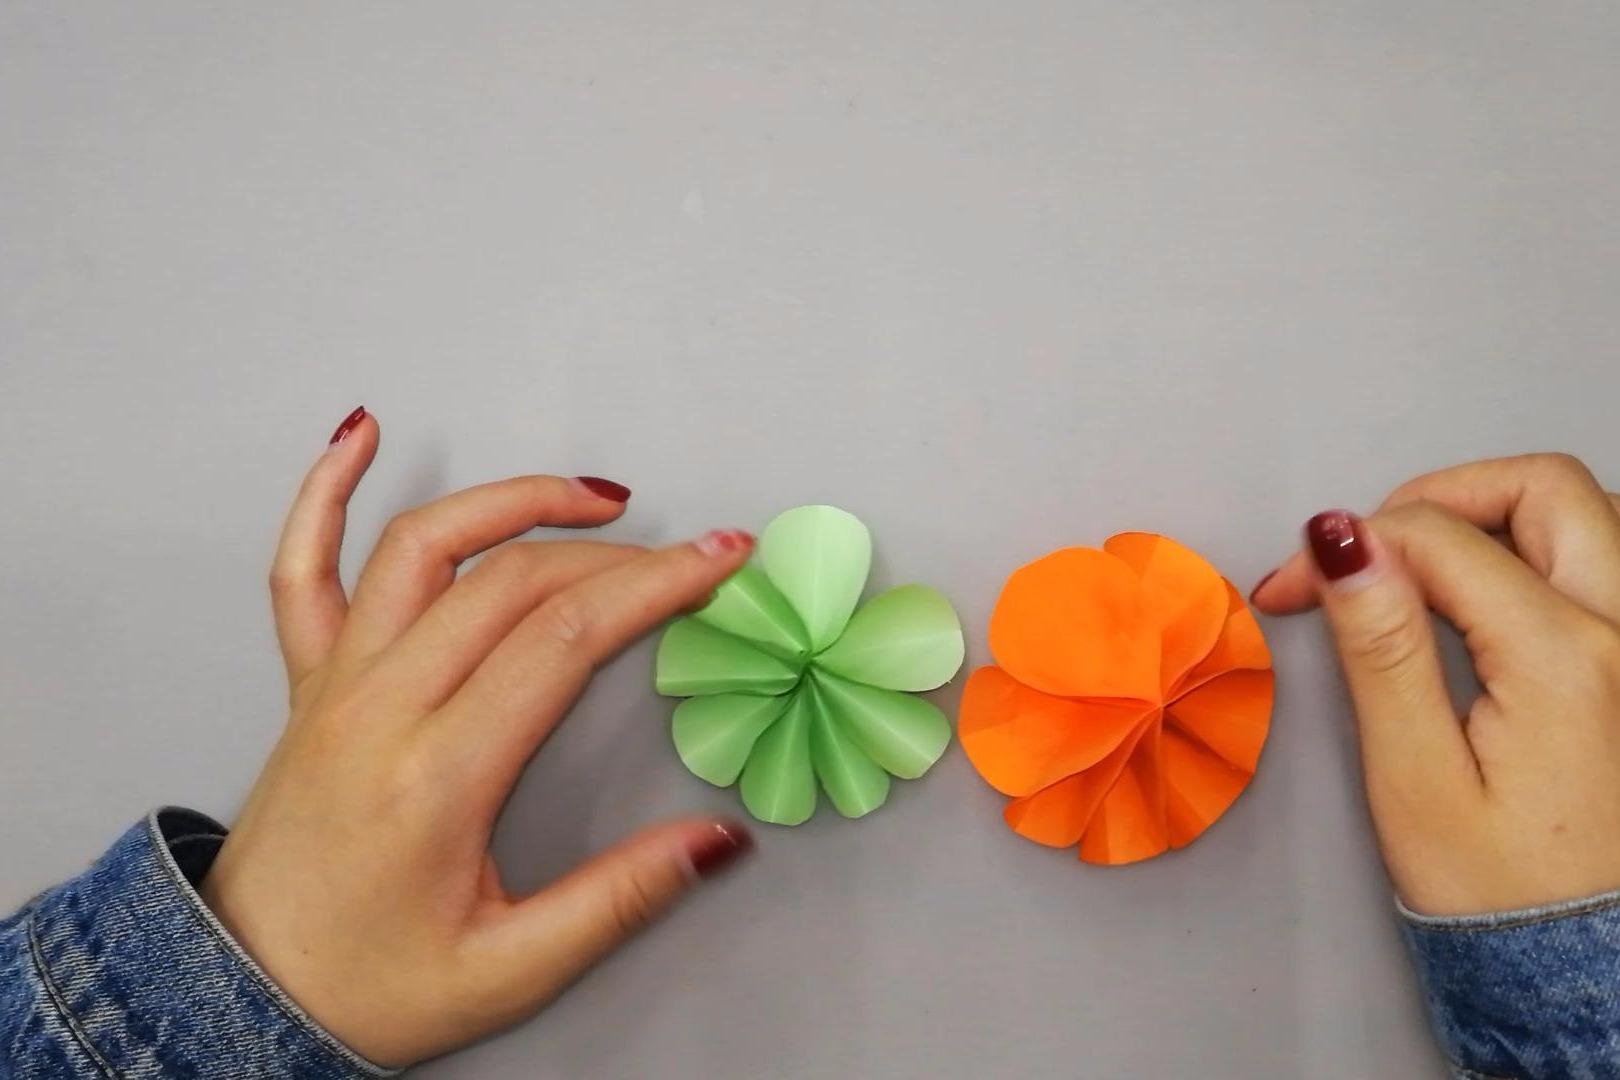 视频:精美的圆形花折纸,一分钟能折好几个,手工折纸视频